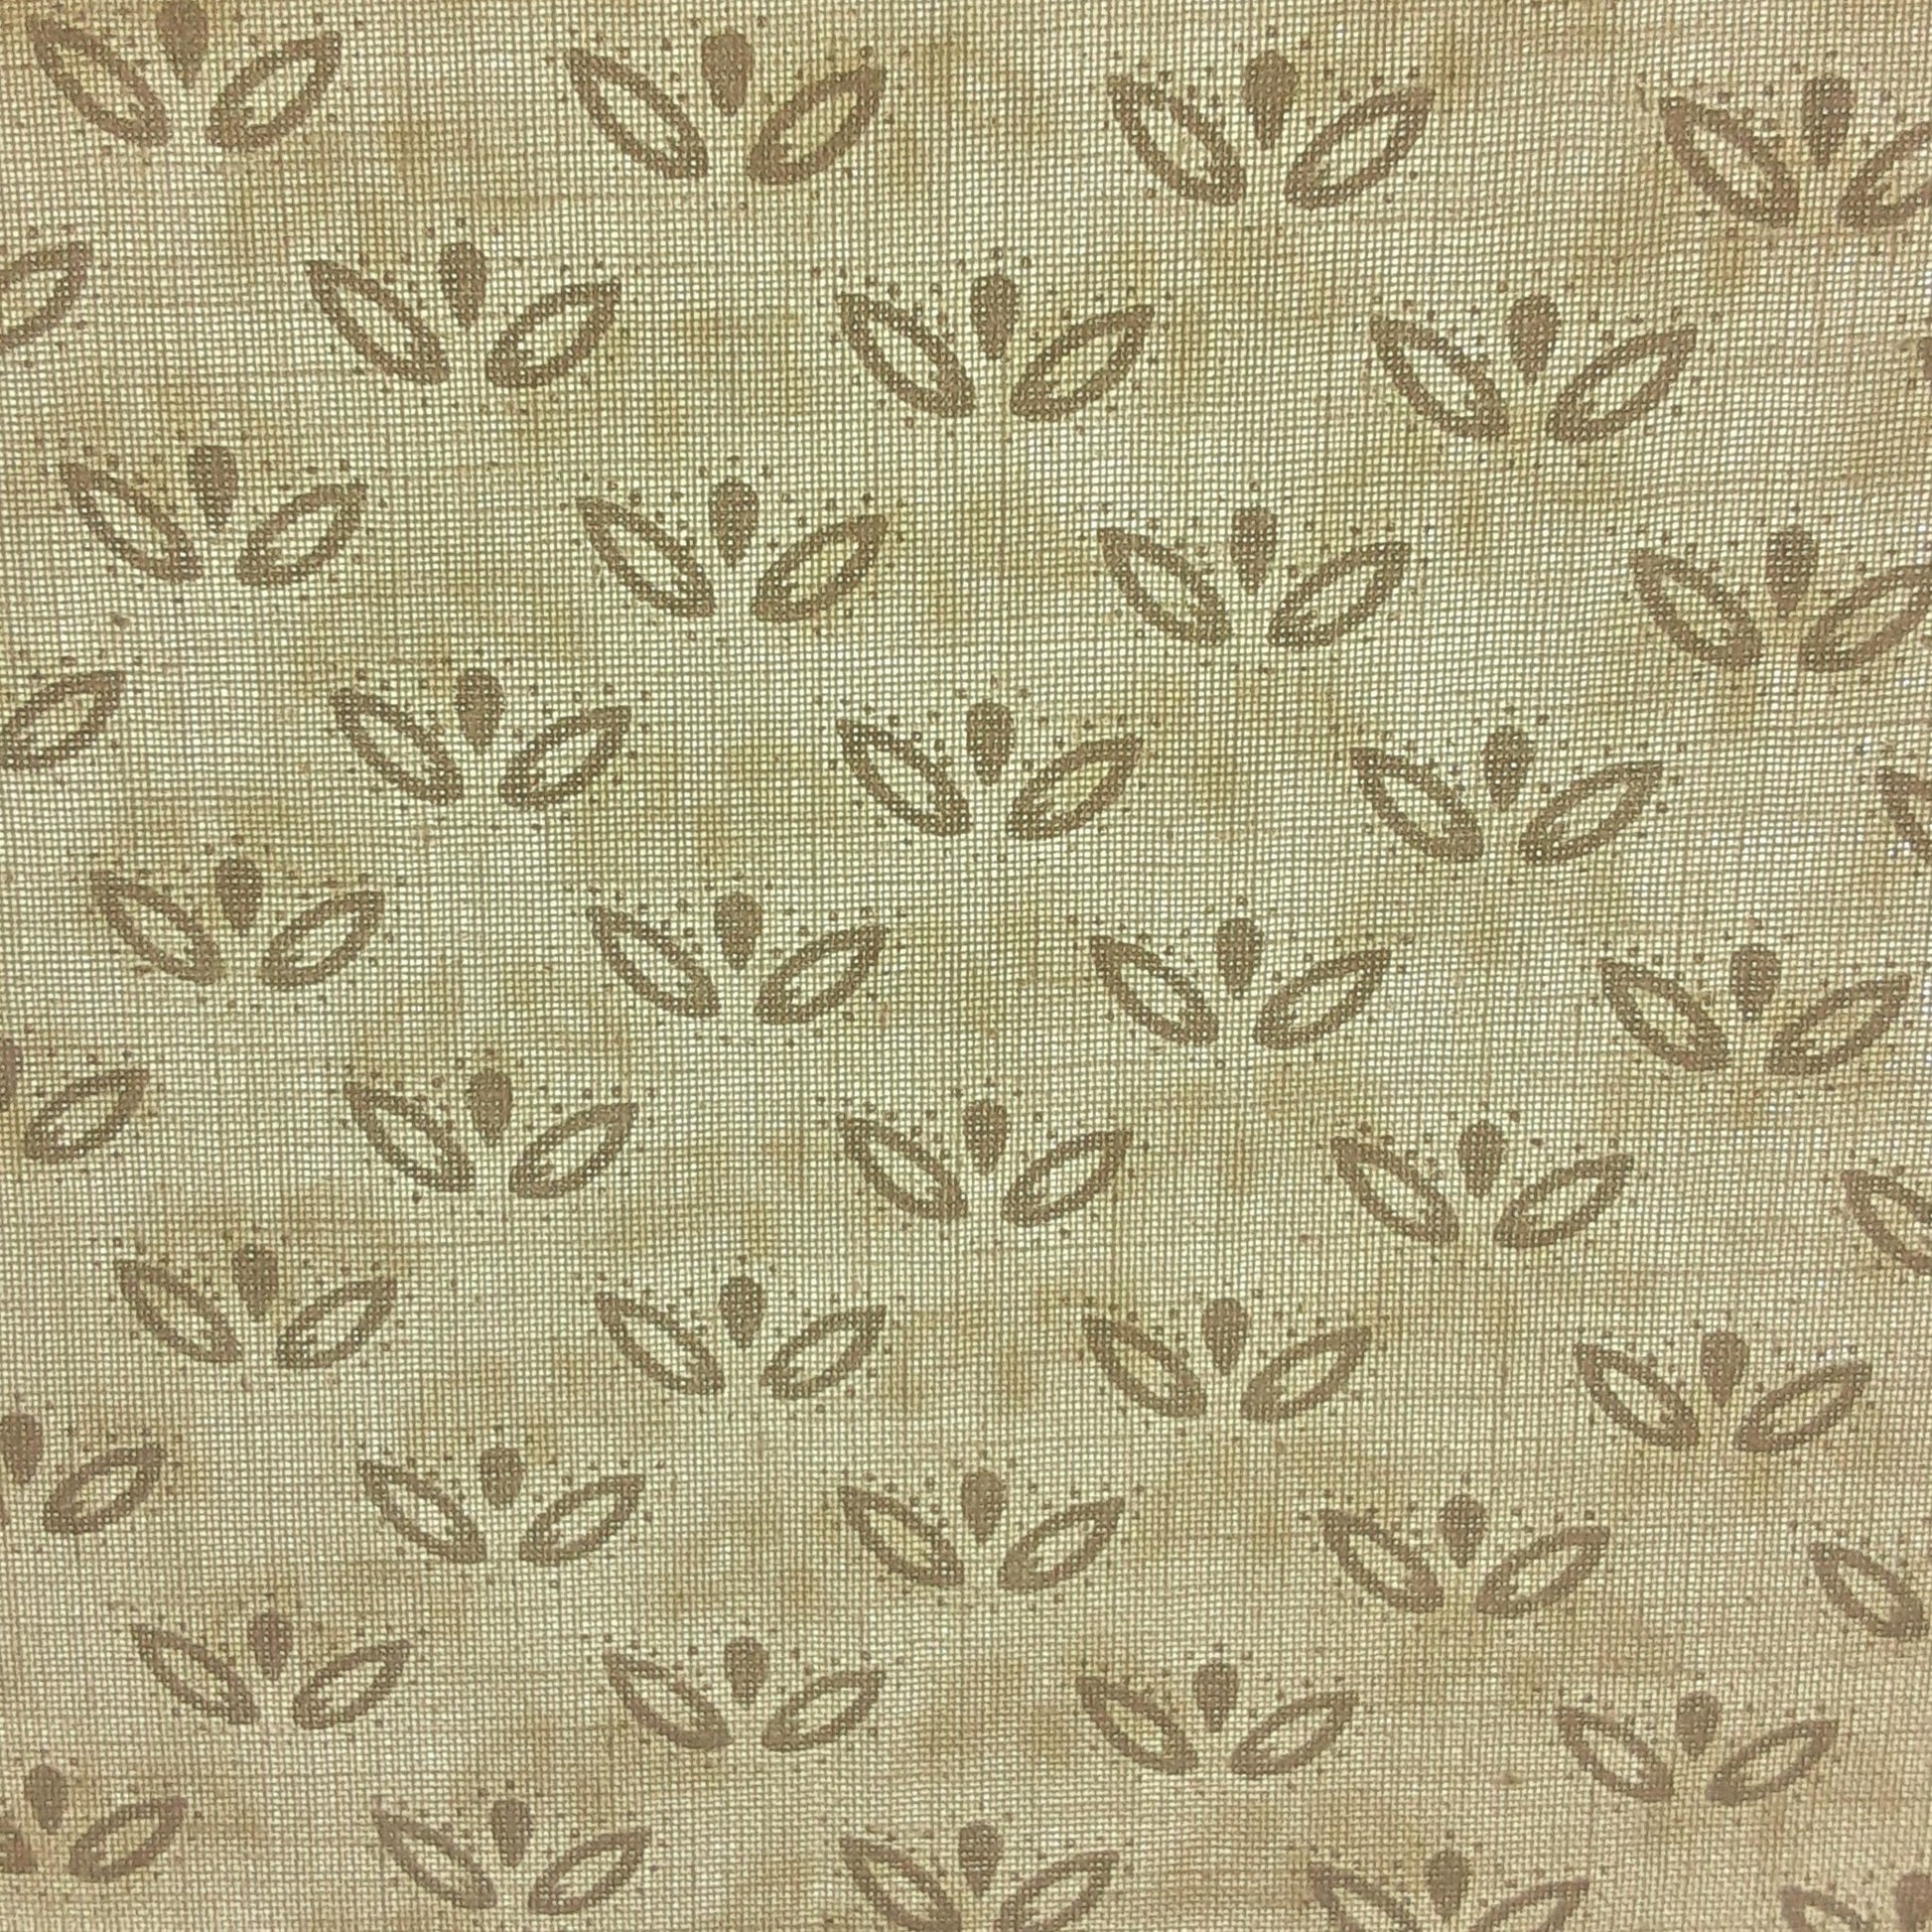 Ivory #U81 Water Lilly Tonal Woven Fabric - SKU 5803B